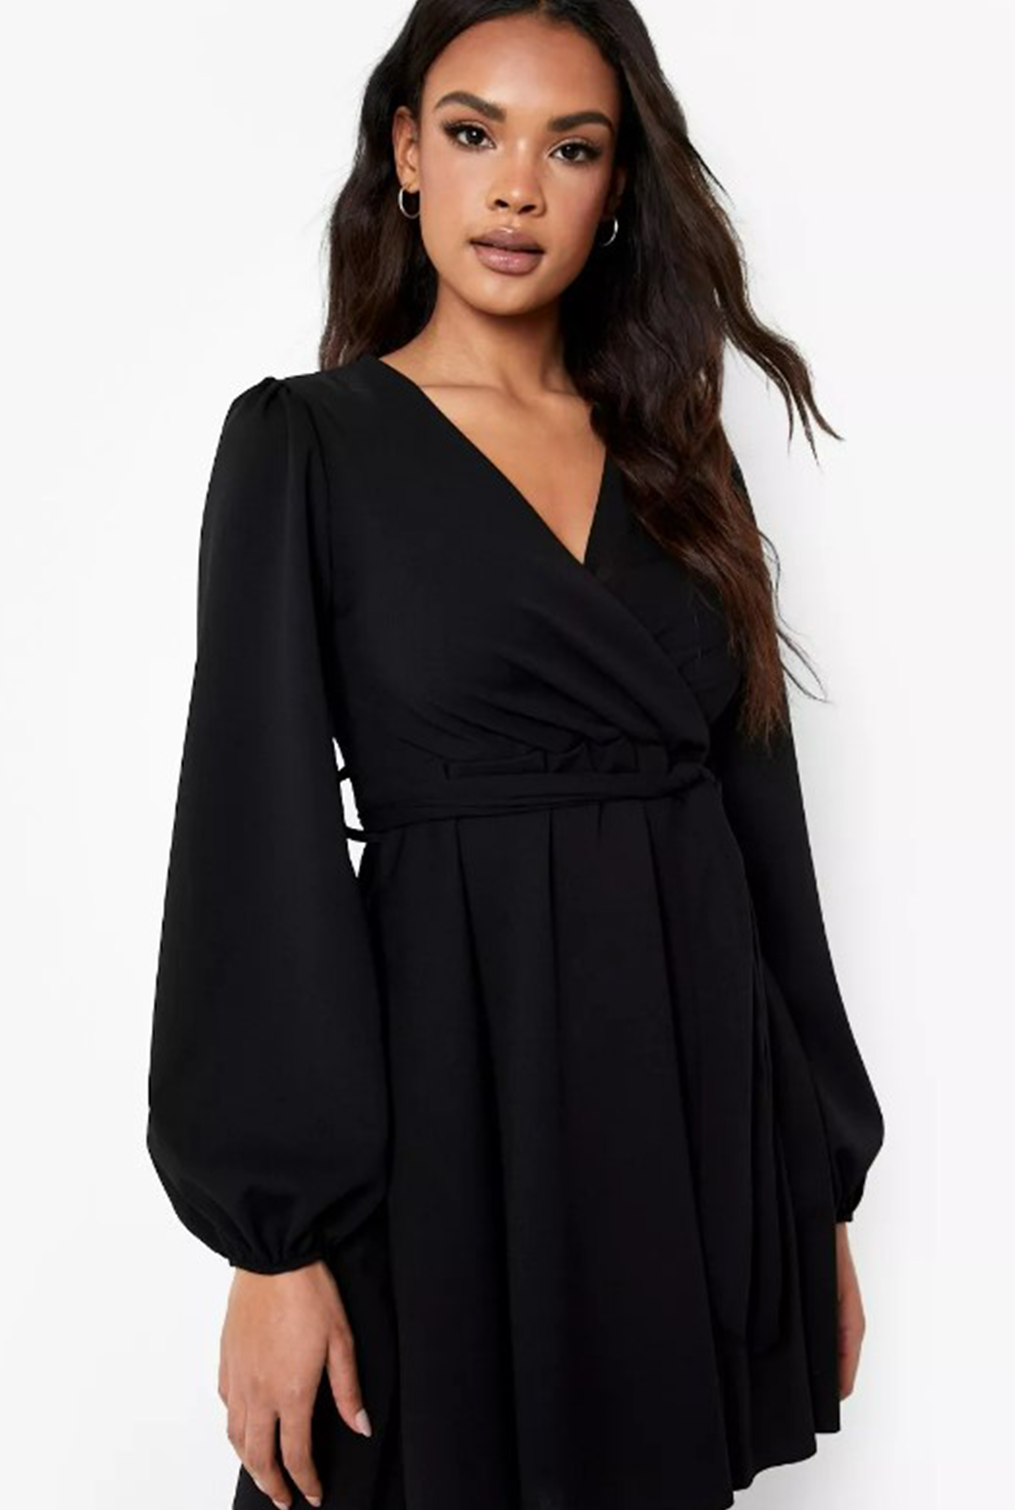 Fanciful Black Dress